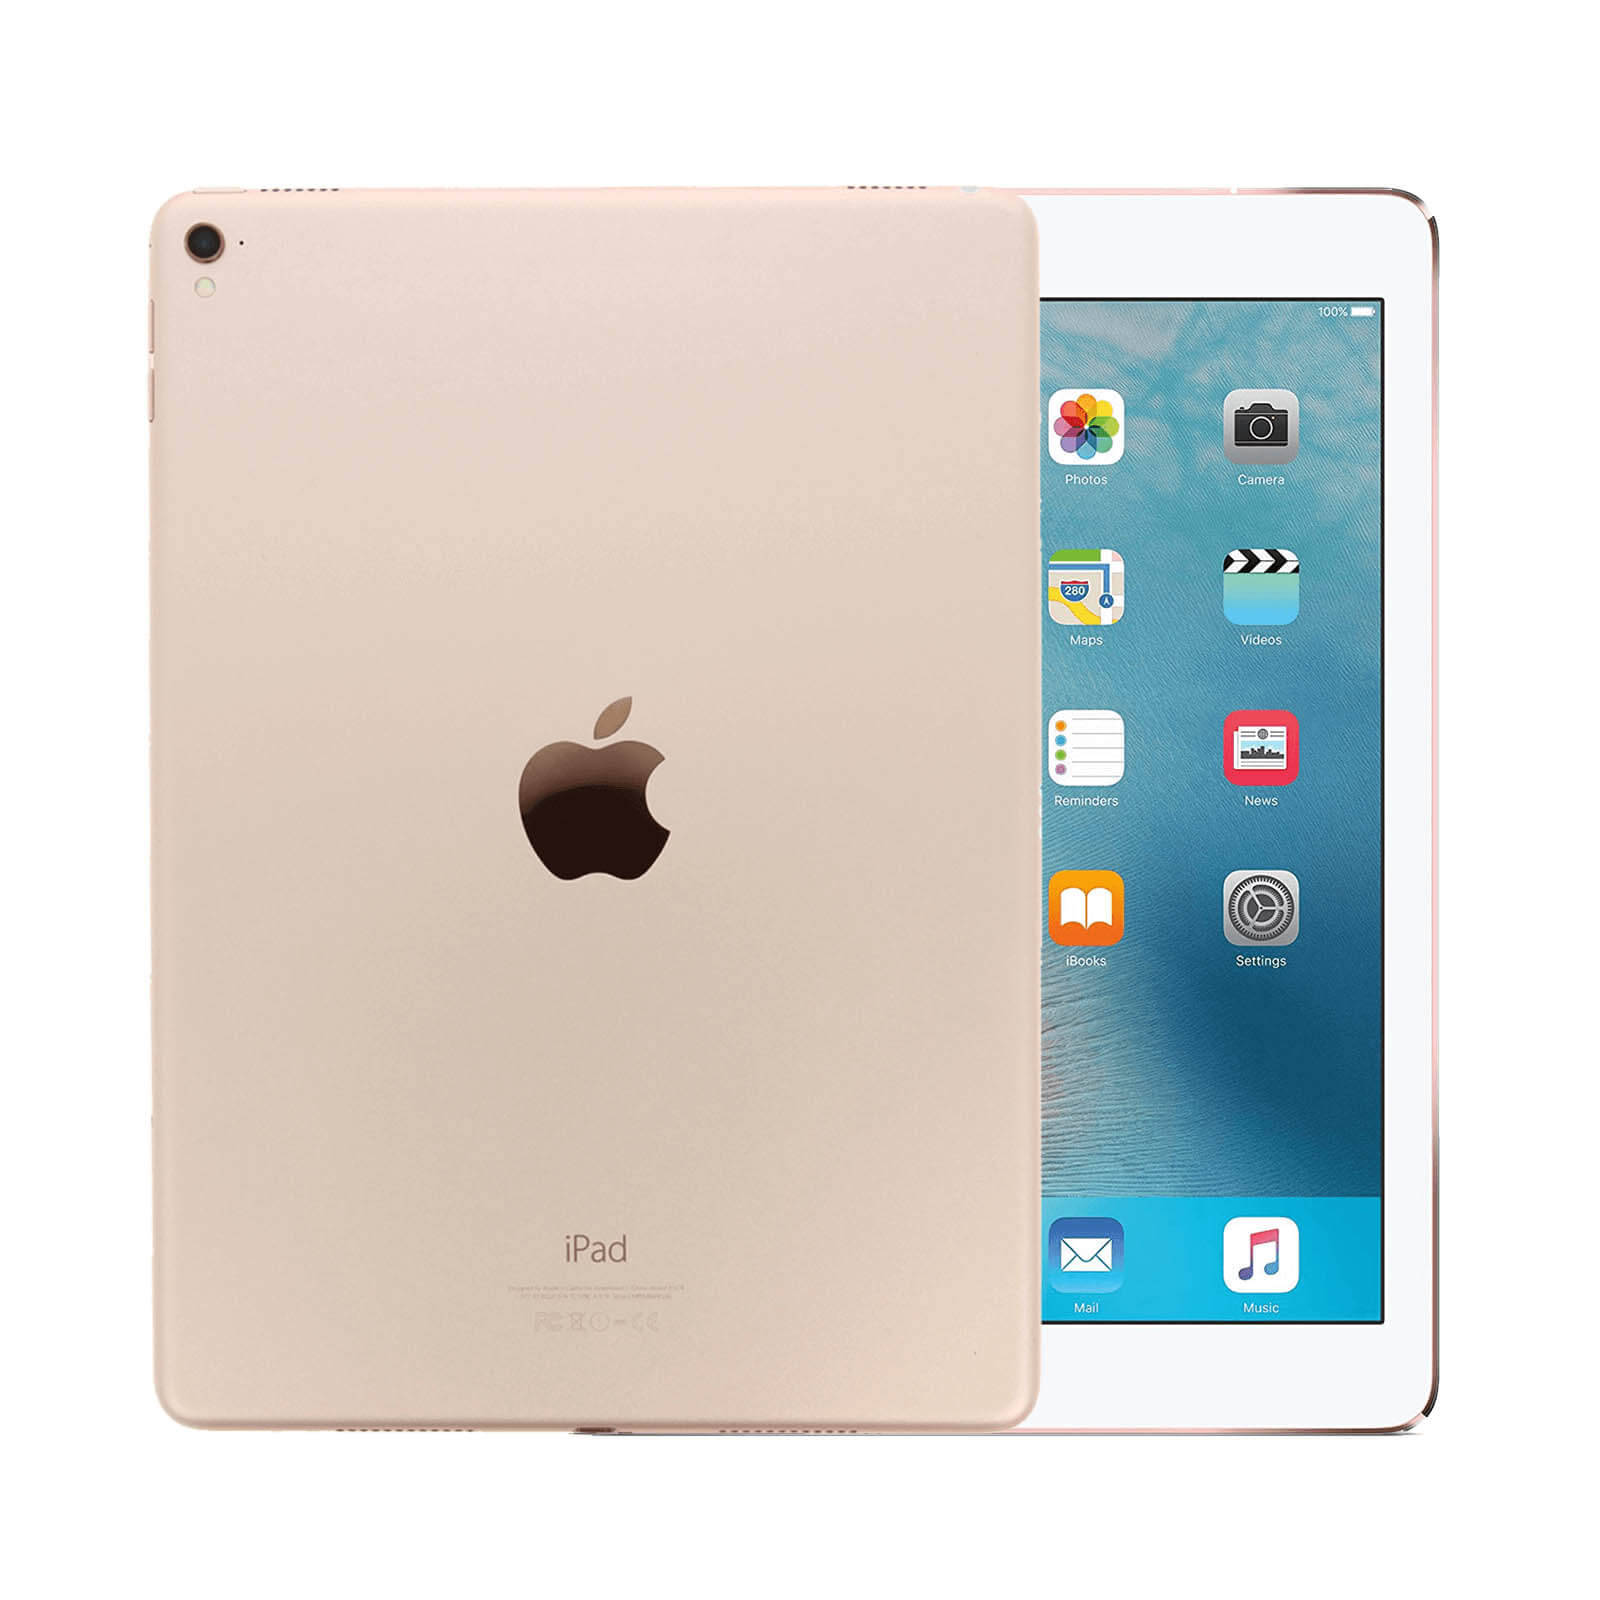 iPad Pro 9.7 Inch 128GB Gold Fair - WiFi